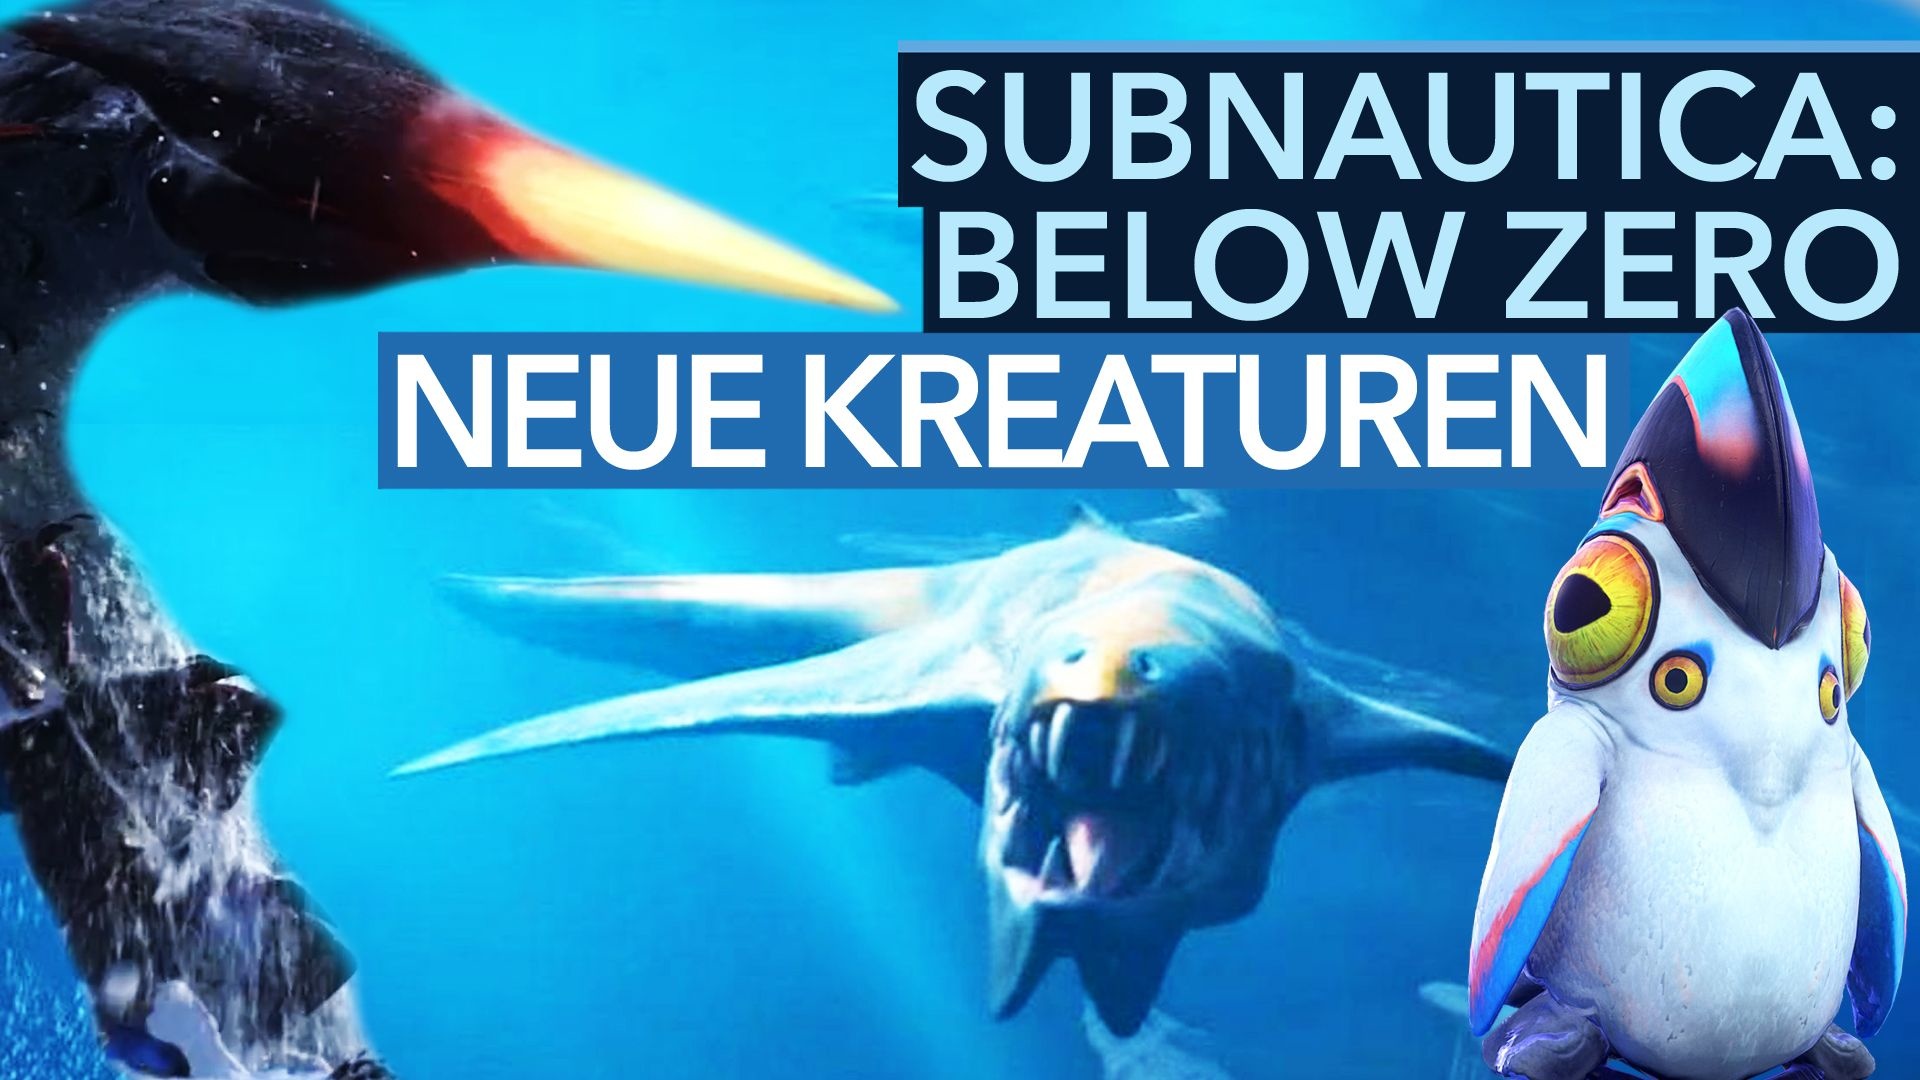 #Subnautica: Below Zero – 12 tolle, neue Kreaturen aus der Fortsetzung im Video